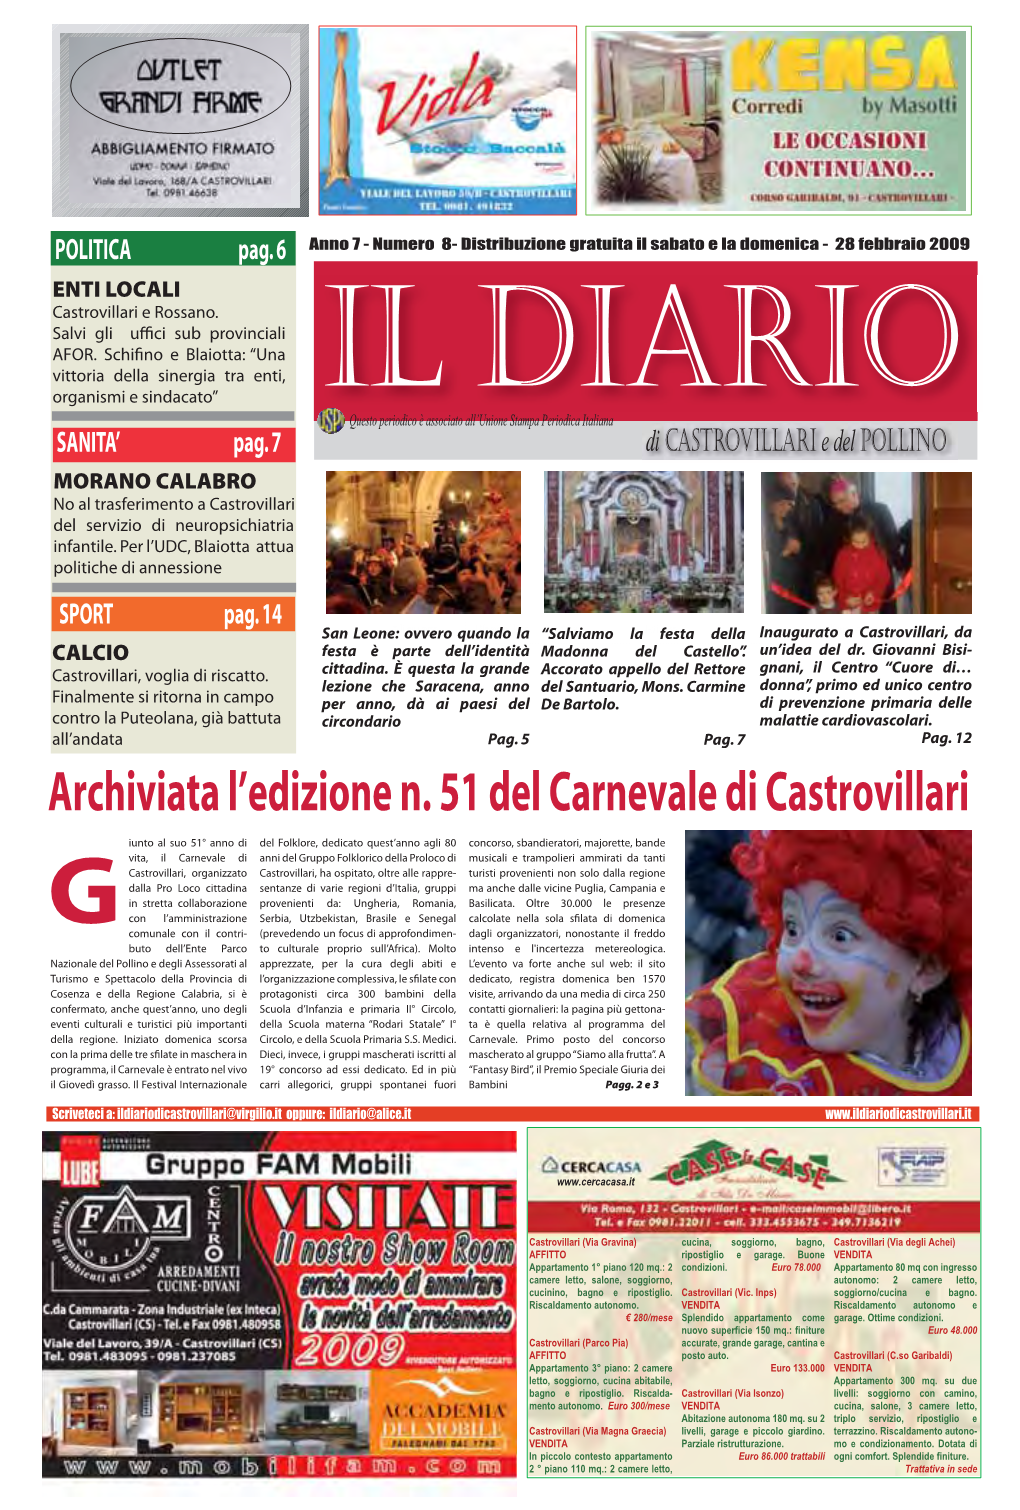 Archiviata L'edizione N. 51 Del Carnevale Di Castrovillari